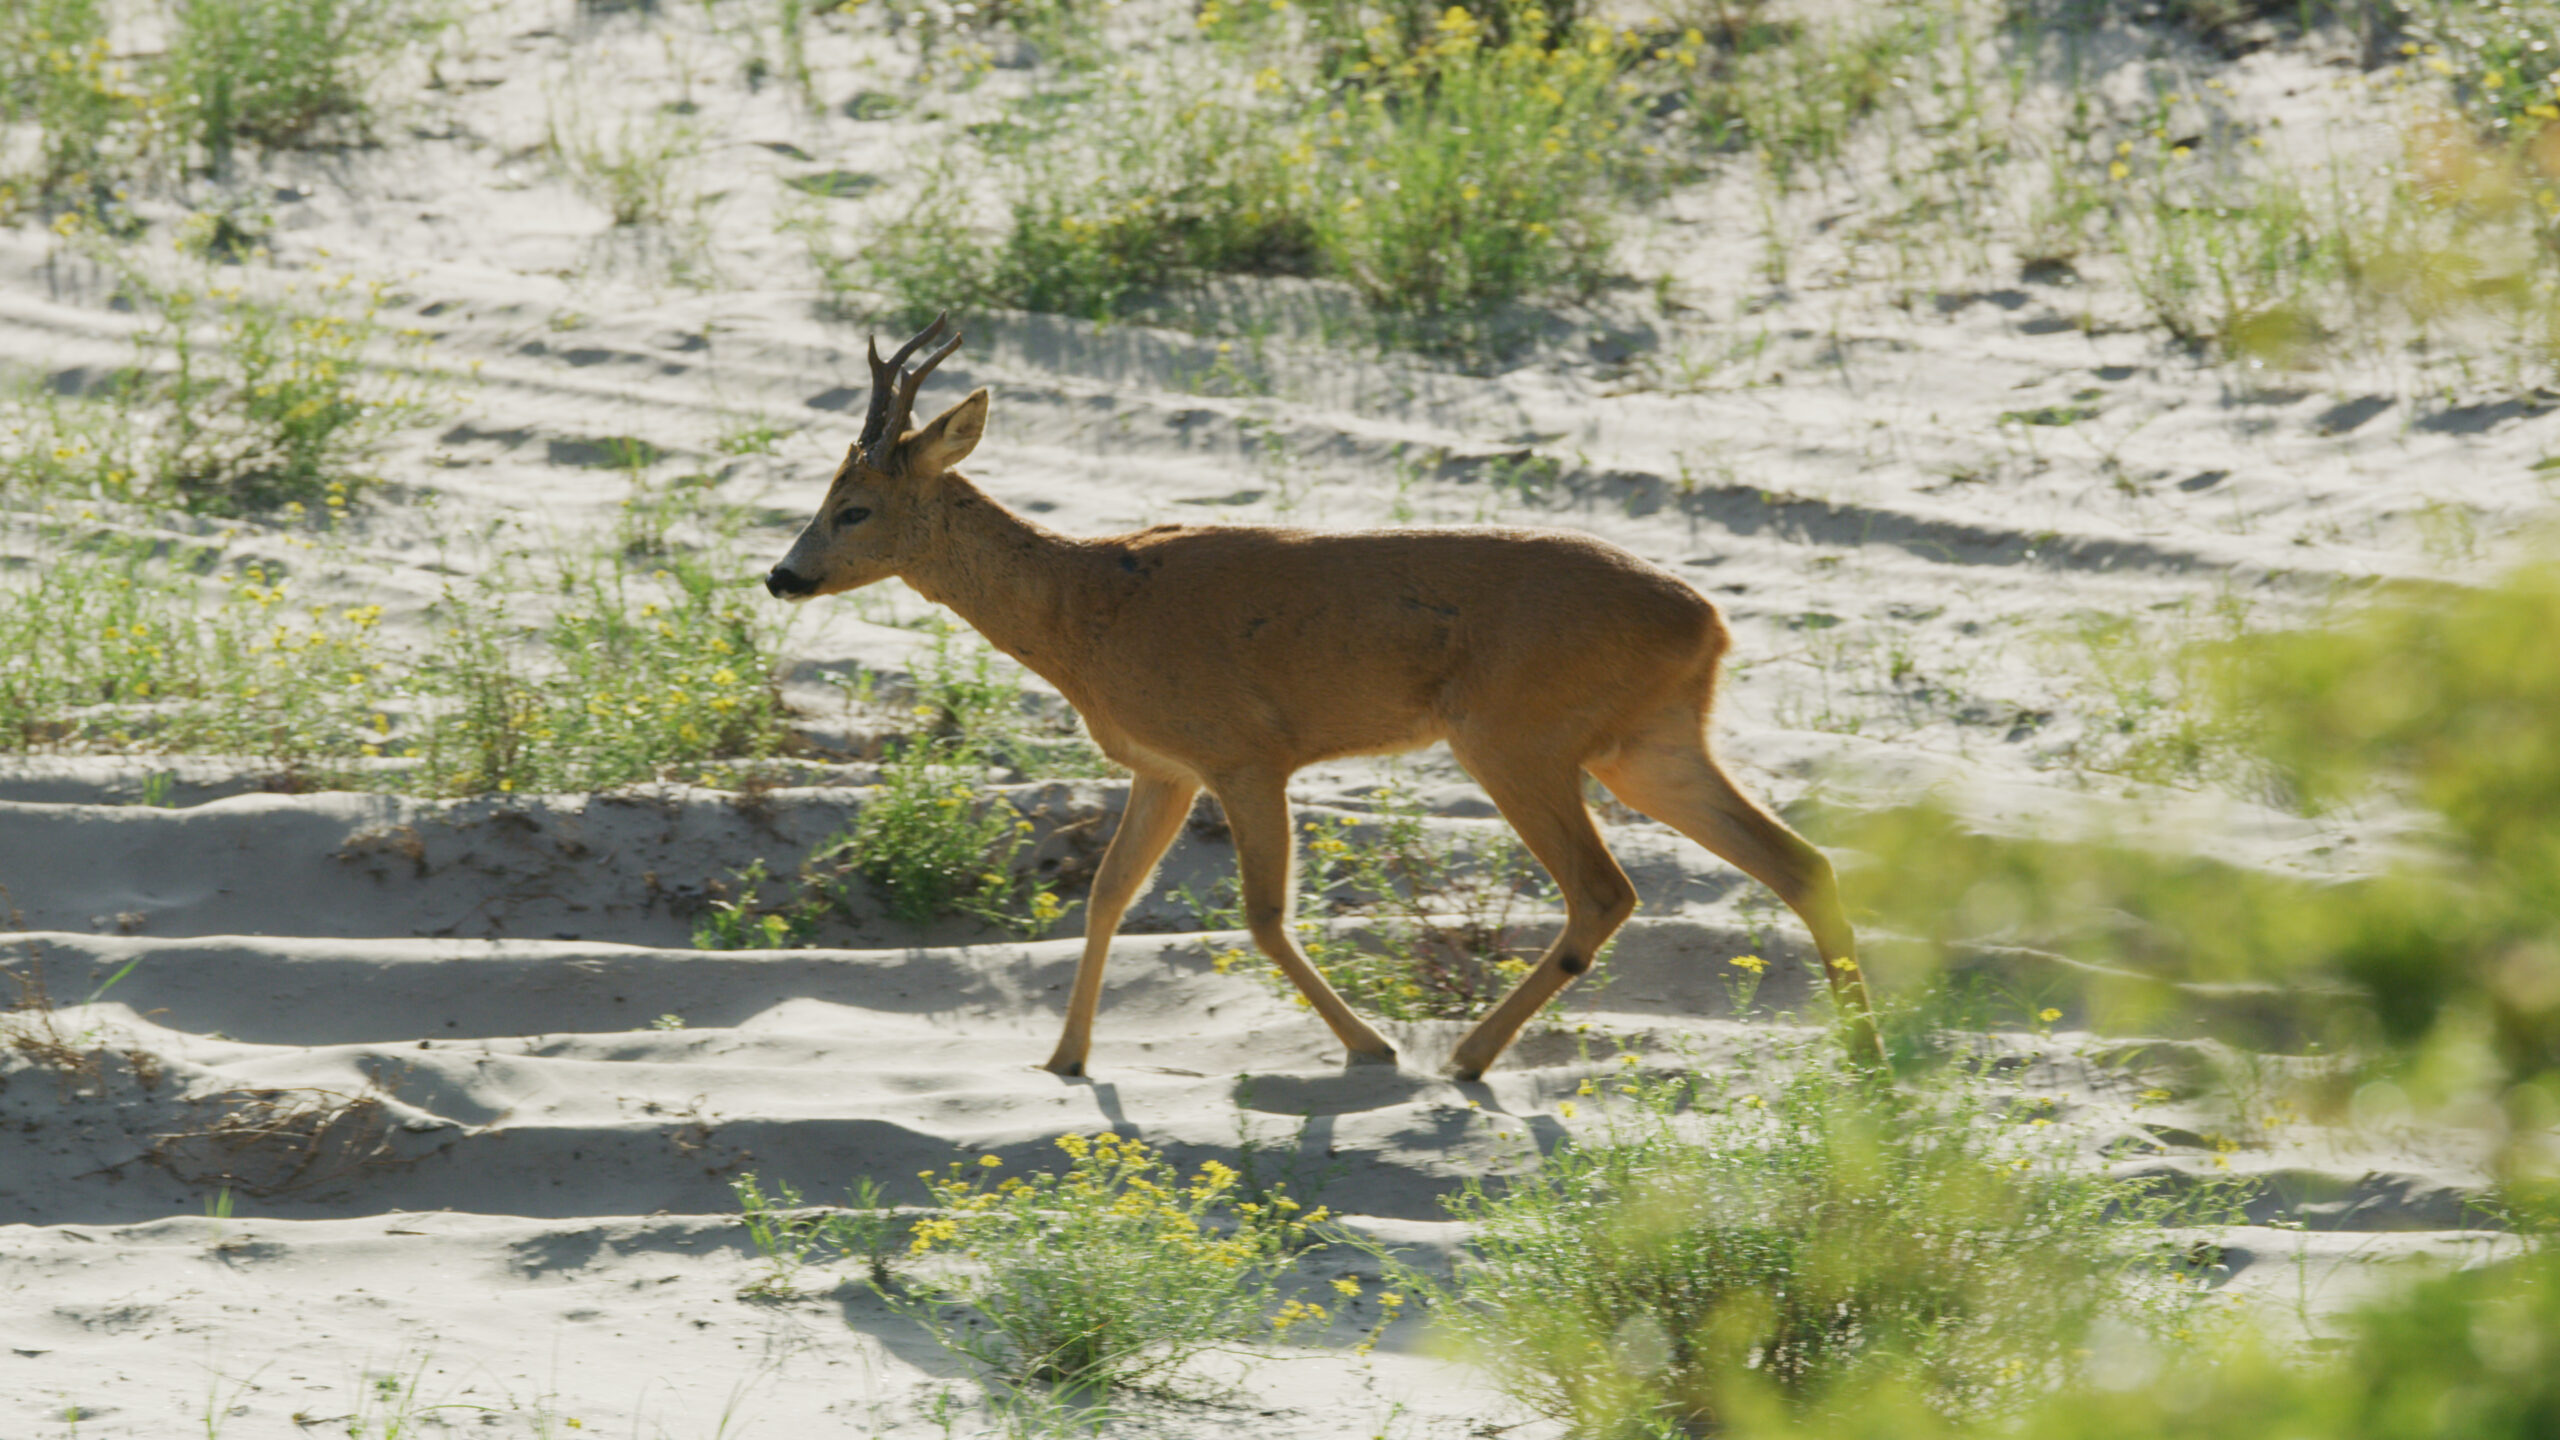 005-WILDDUNES - Adult Roe Deer walking on sand